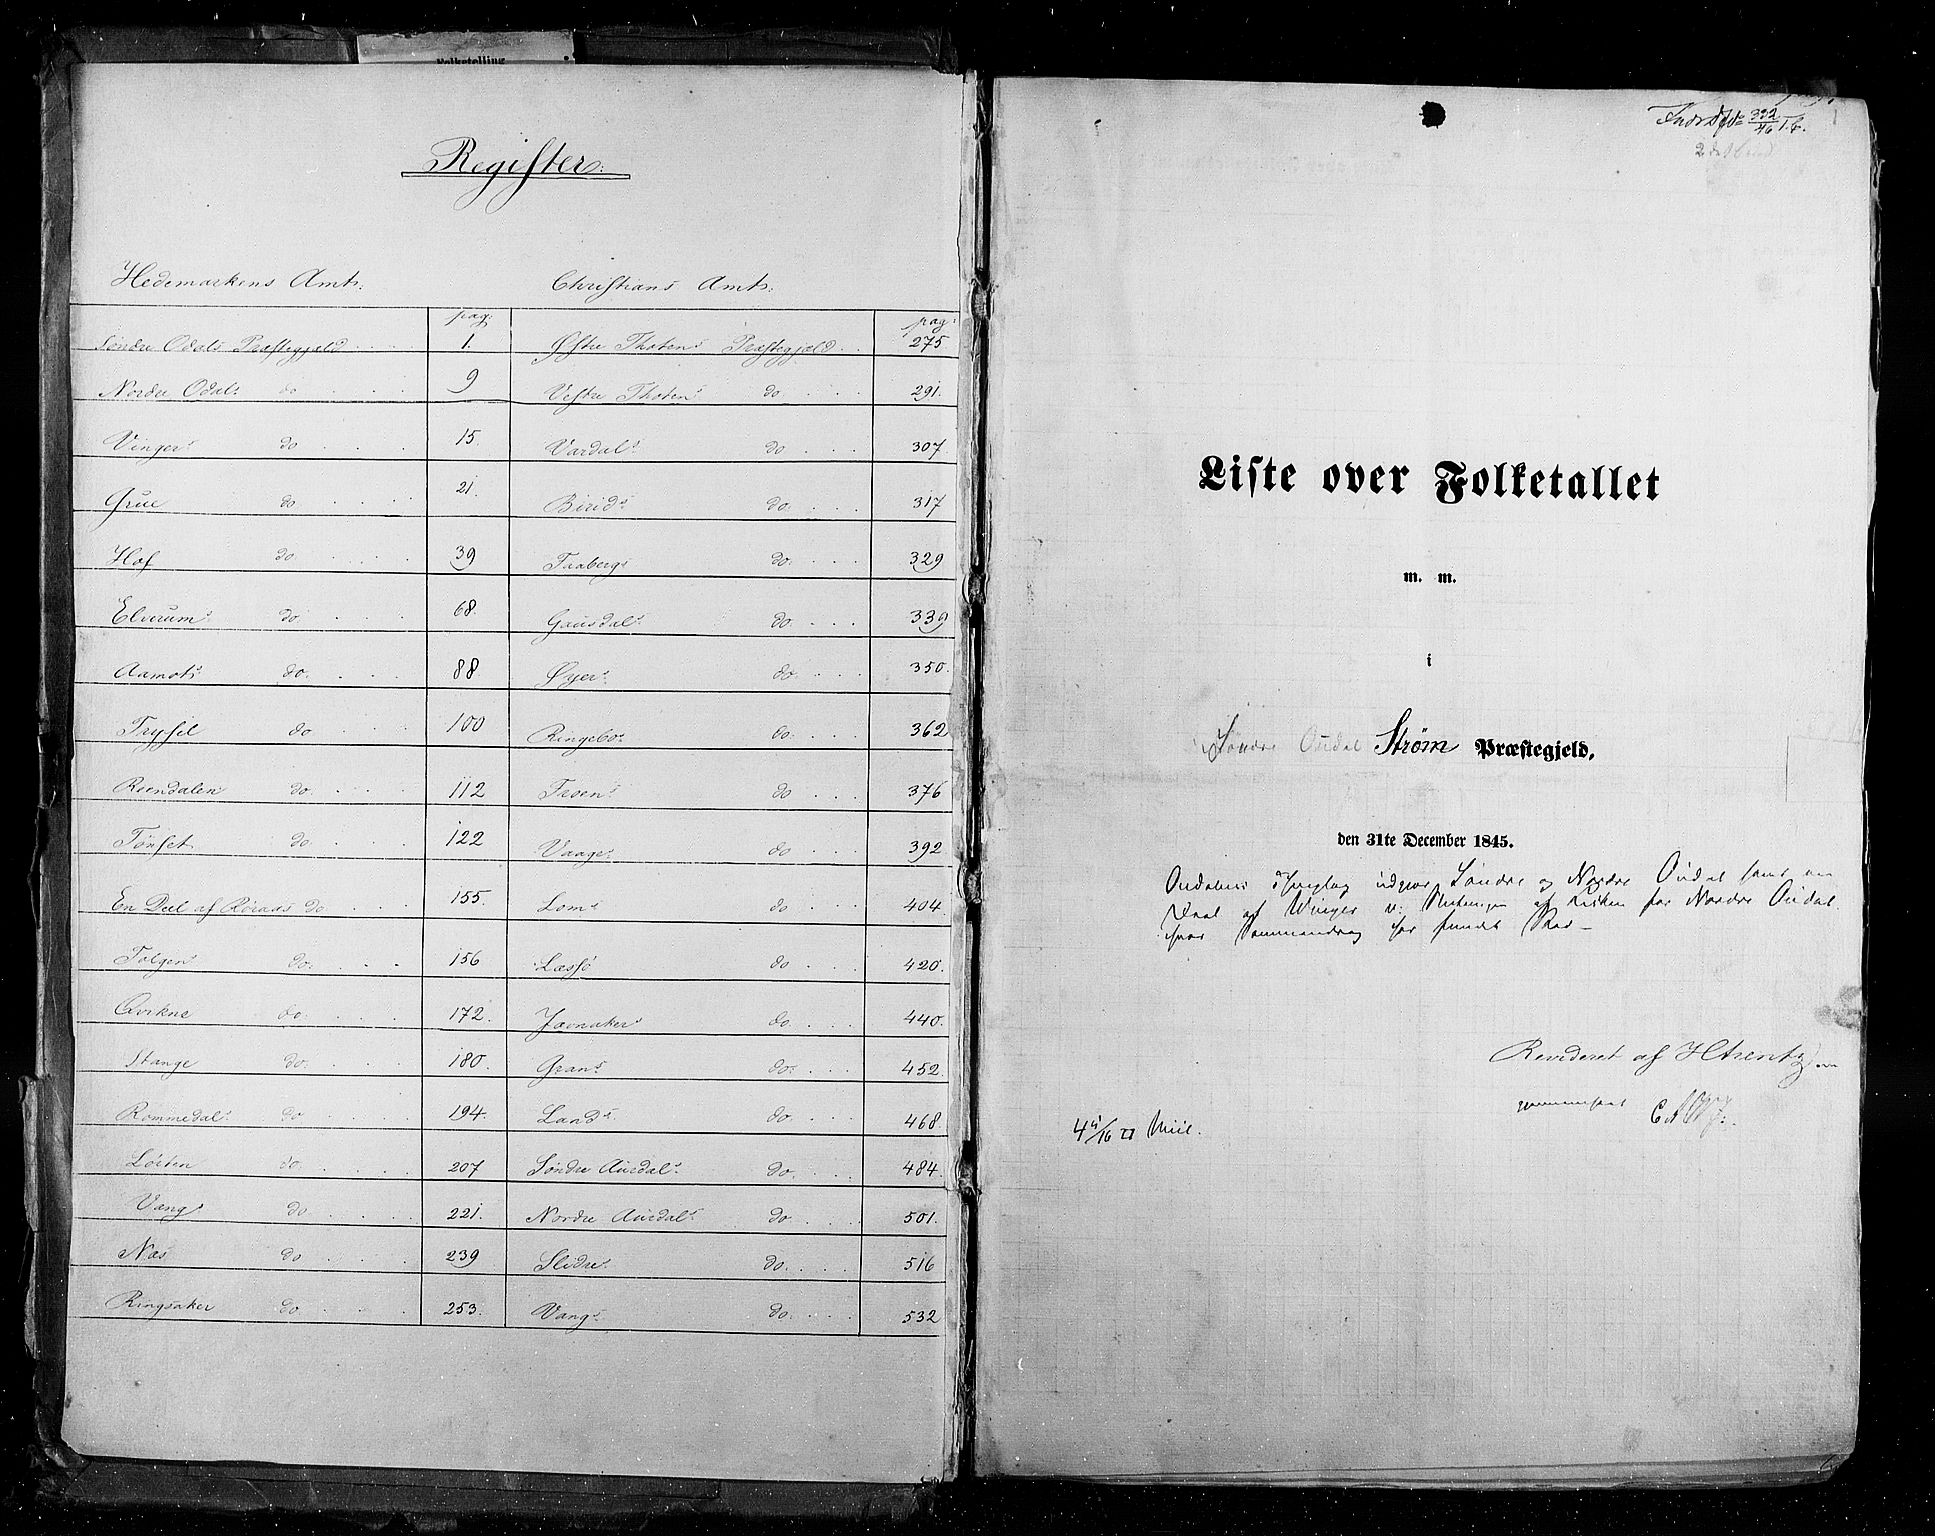 RA, Folketellingen 1845, bind 3: Hedemarken amt og Kristians amt, 1845, s. 1